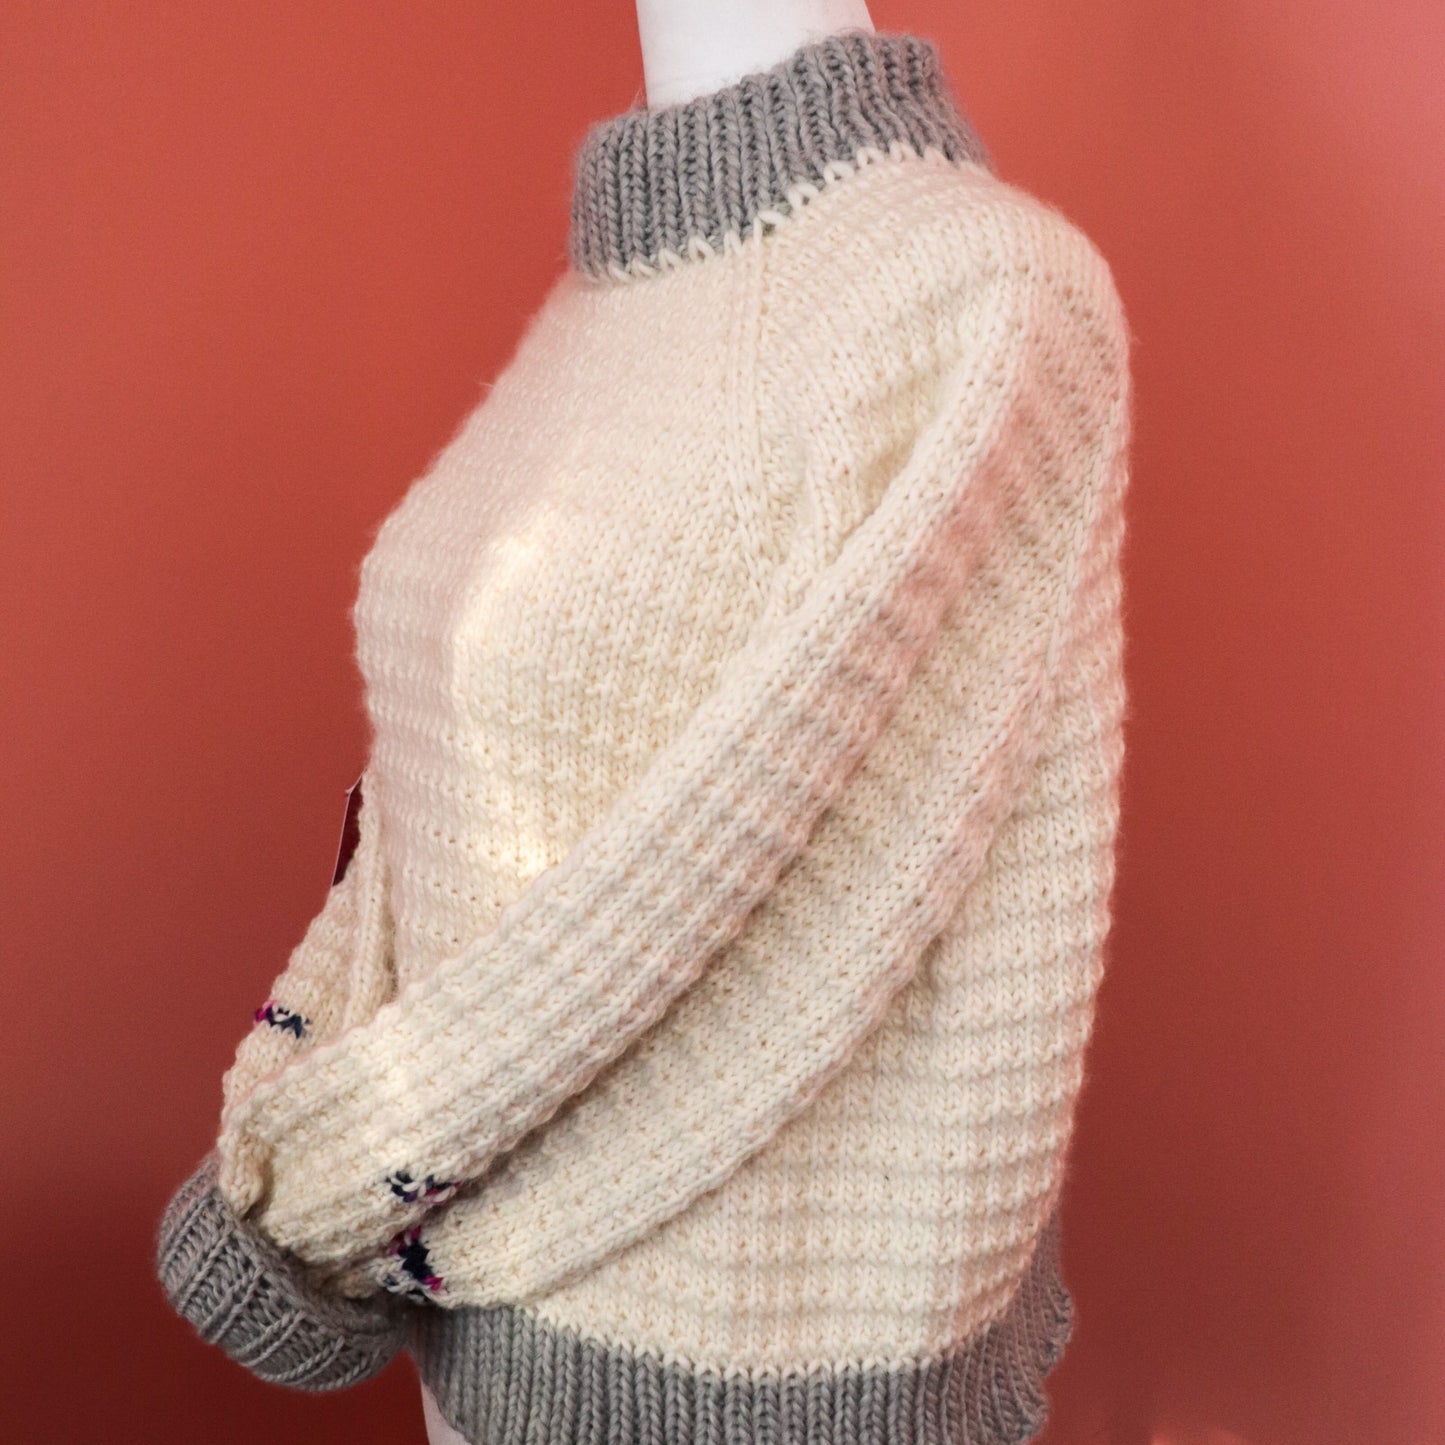 Merino Thin Sweater in White and Grey